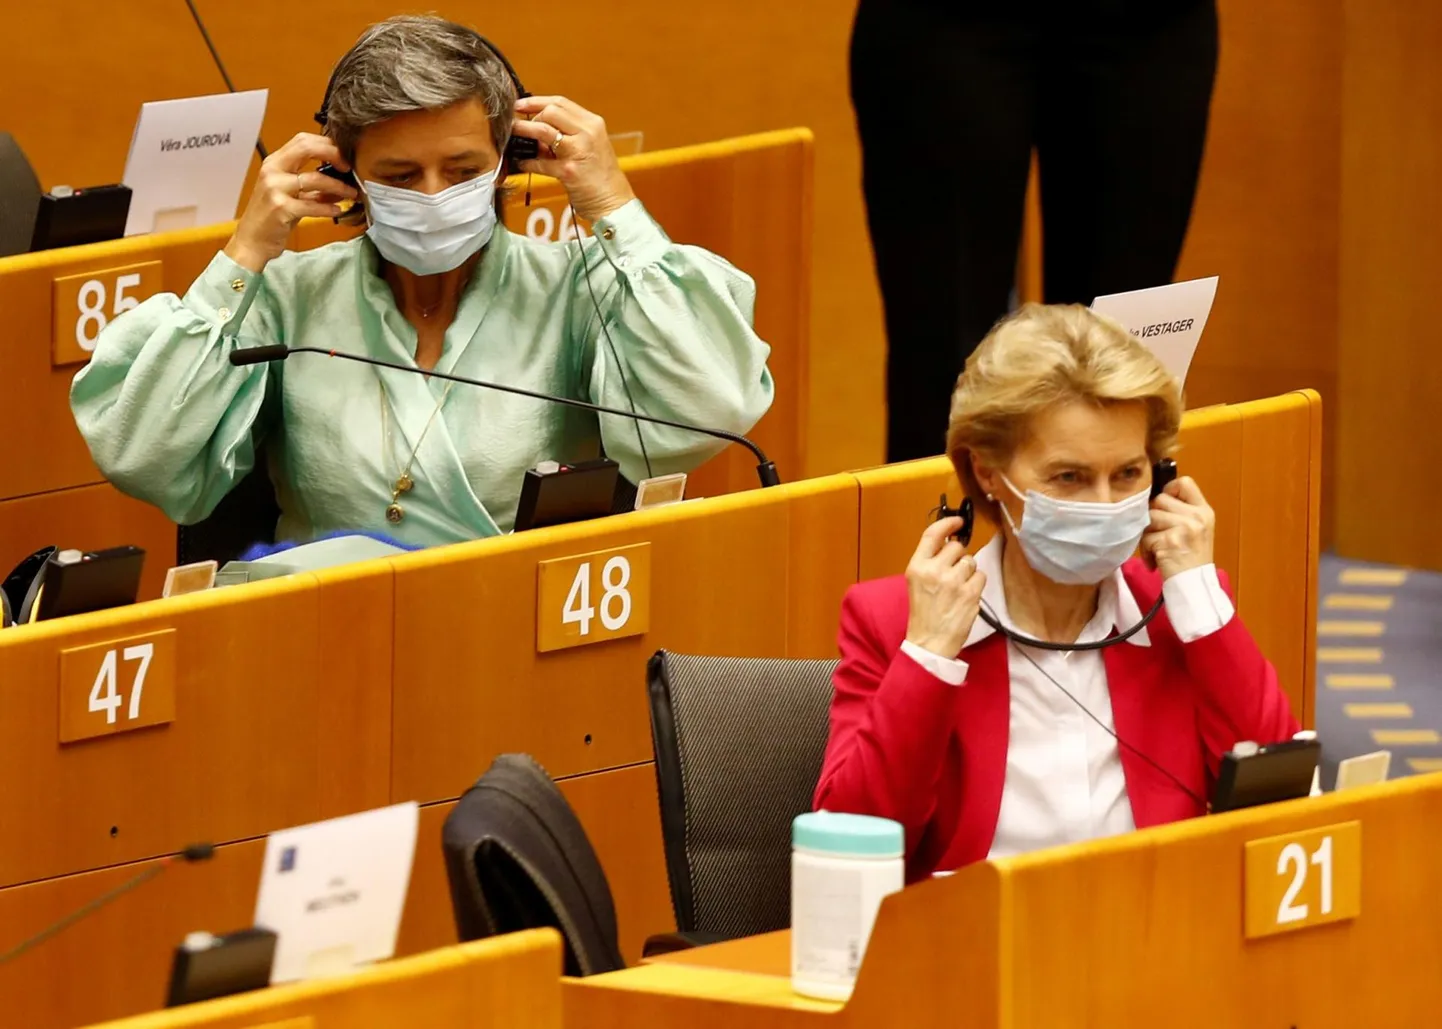 Снимать маски для лица в пленарном зале Европарламента сейчас можно только на время произнесения речи. Это требование выполняют и президент Еврокомиссии Урсула фон дер Ляйен, и находящаяся за ее спиной вице-президент Маргрет Вестагер.